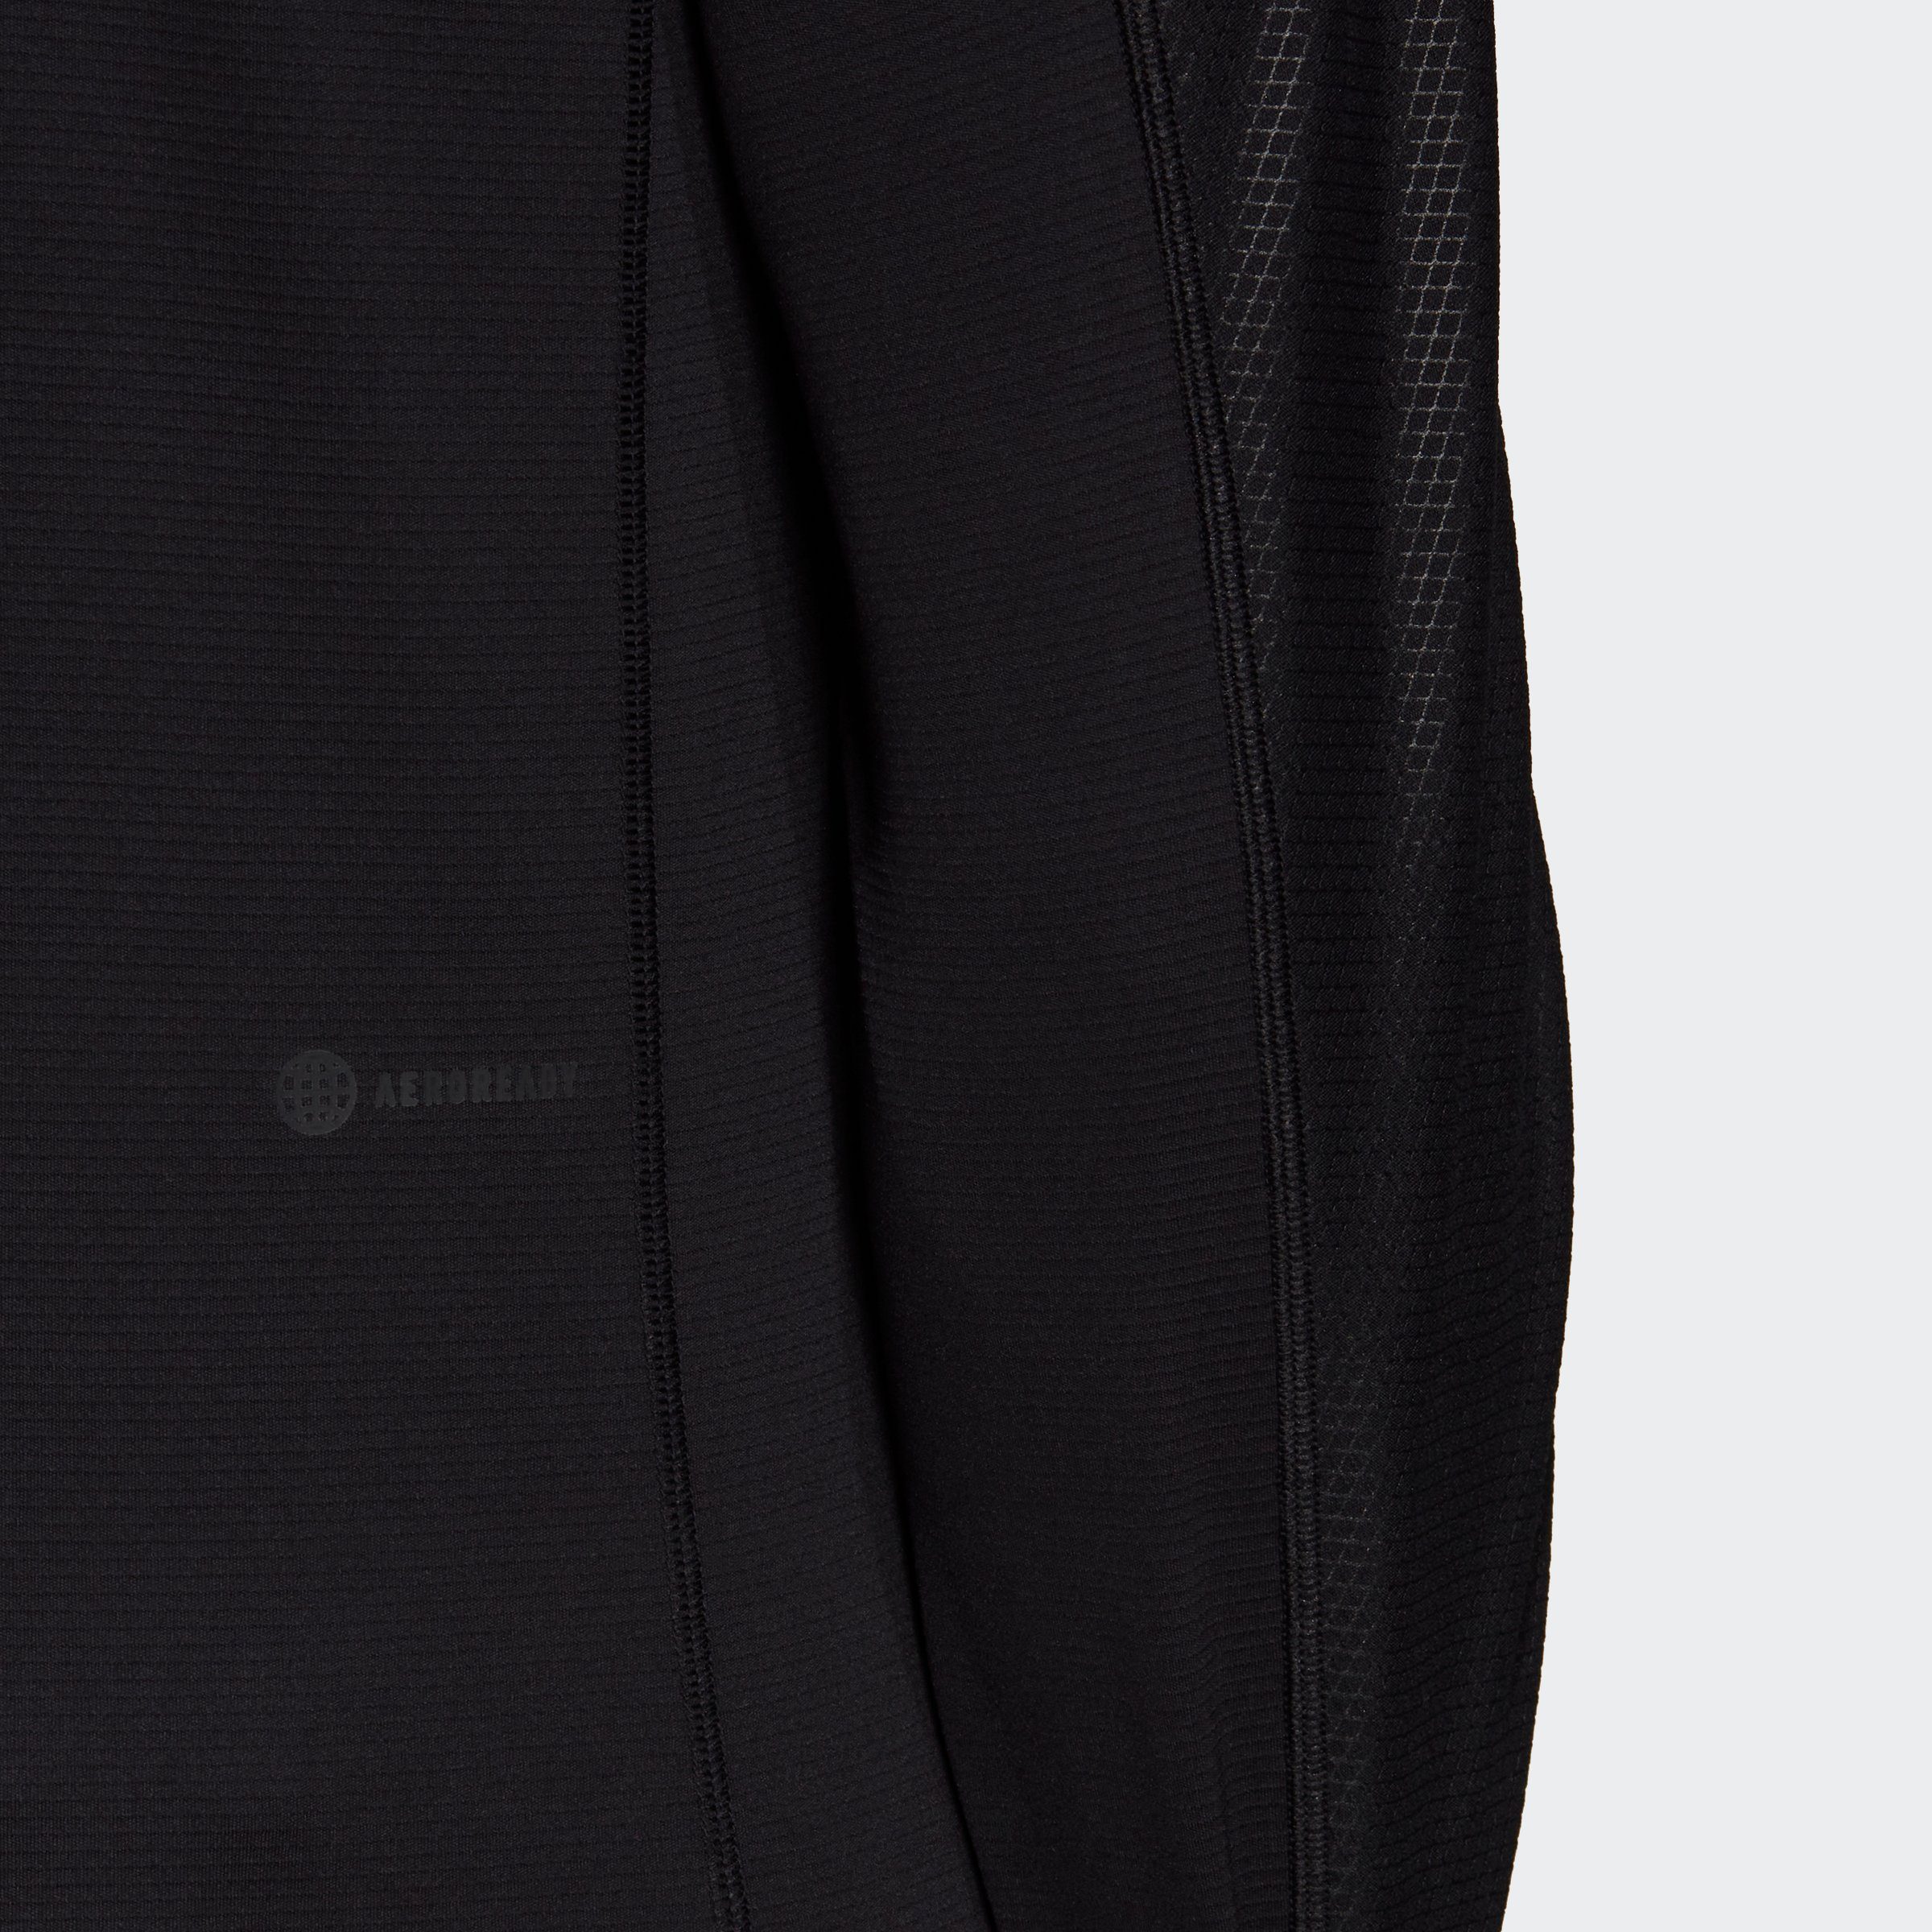 adidas Performance Funktionsshirt WORKOUT PU-COATED / schwarz LONGSLEEVE weiß